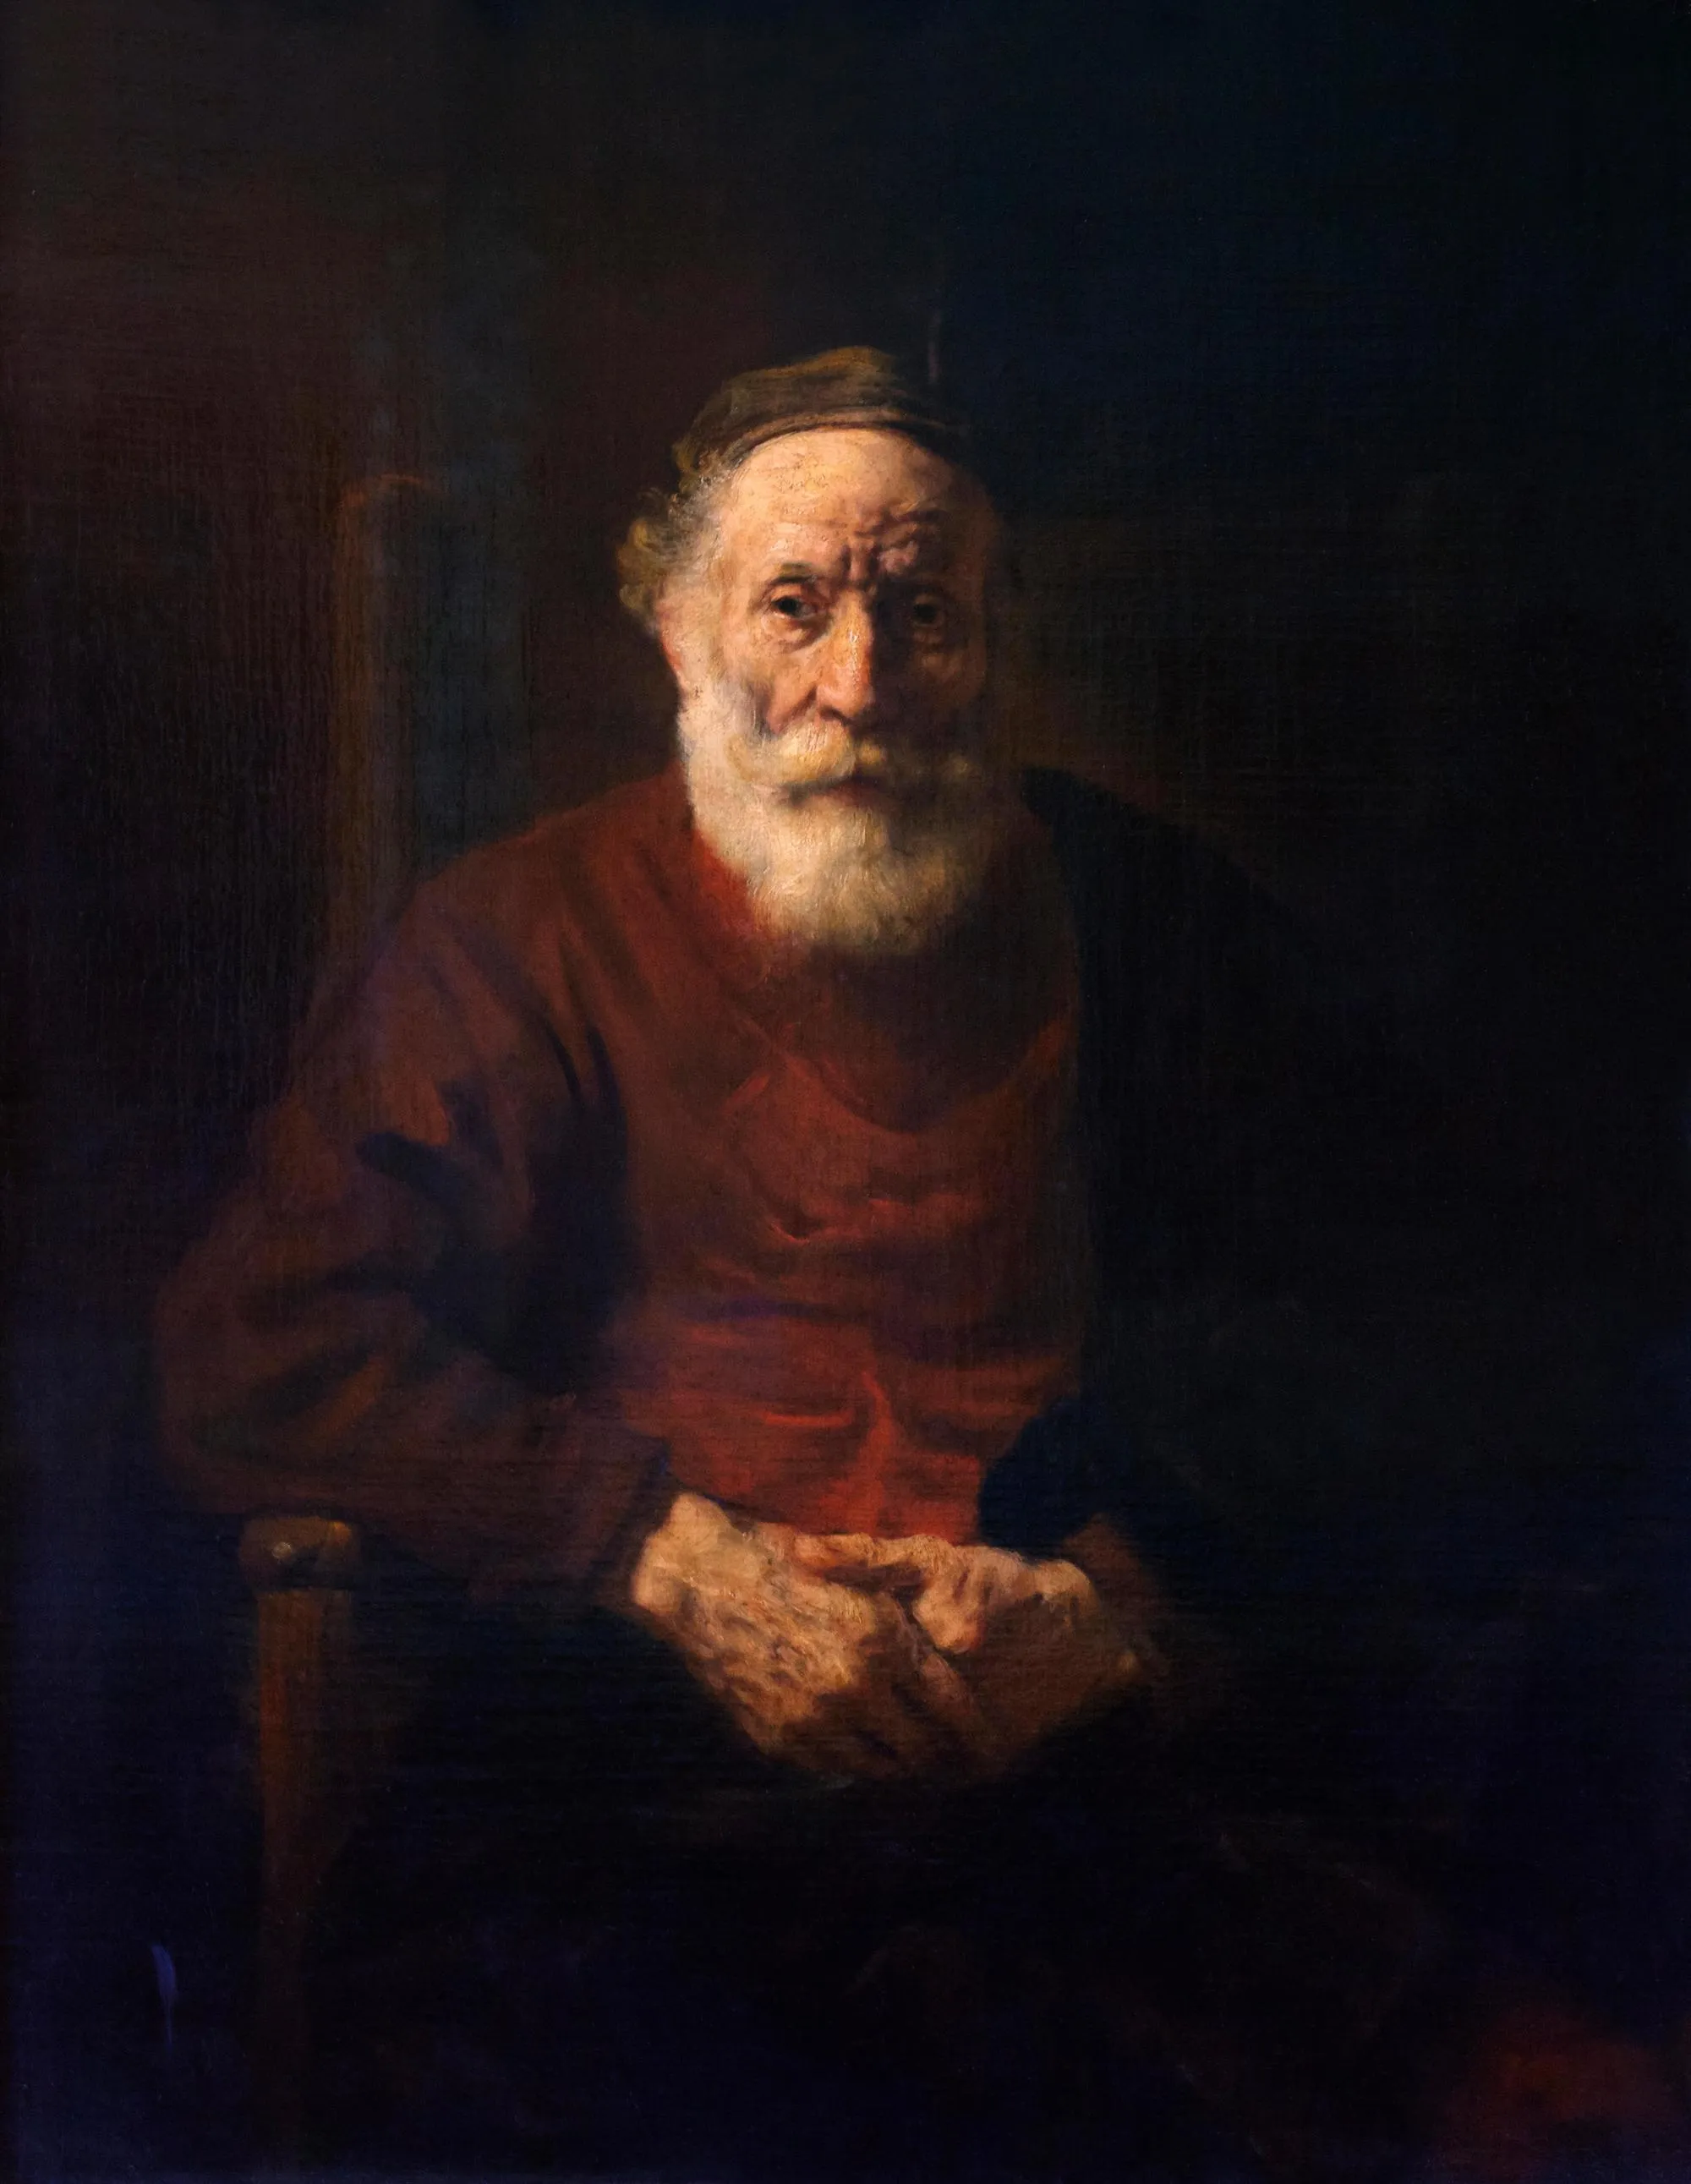 Rembrandt van Rijn, Portrait d'un vieil homme en rouge, 1652-1654, huile sur toile, 108 ×86 cm, musée de l'Ermitage, Saint-Pétersbourg, Russie.